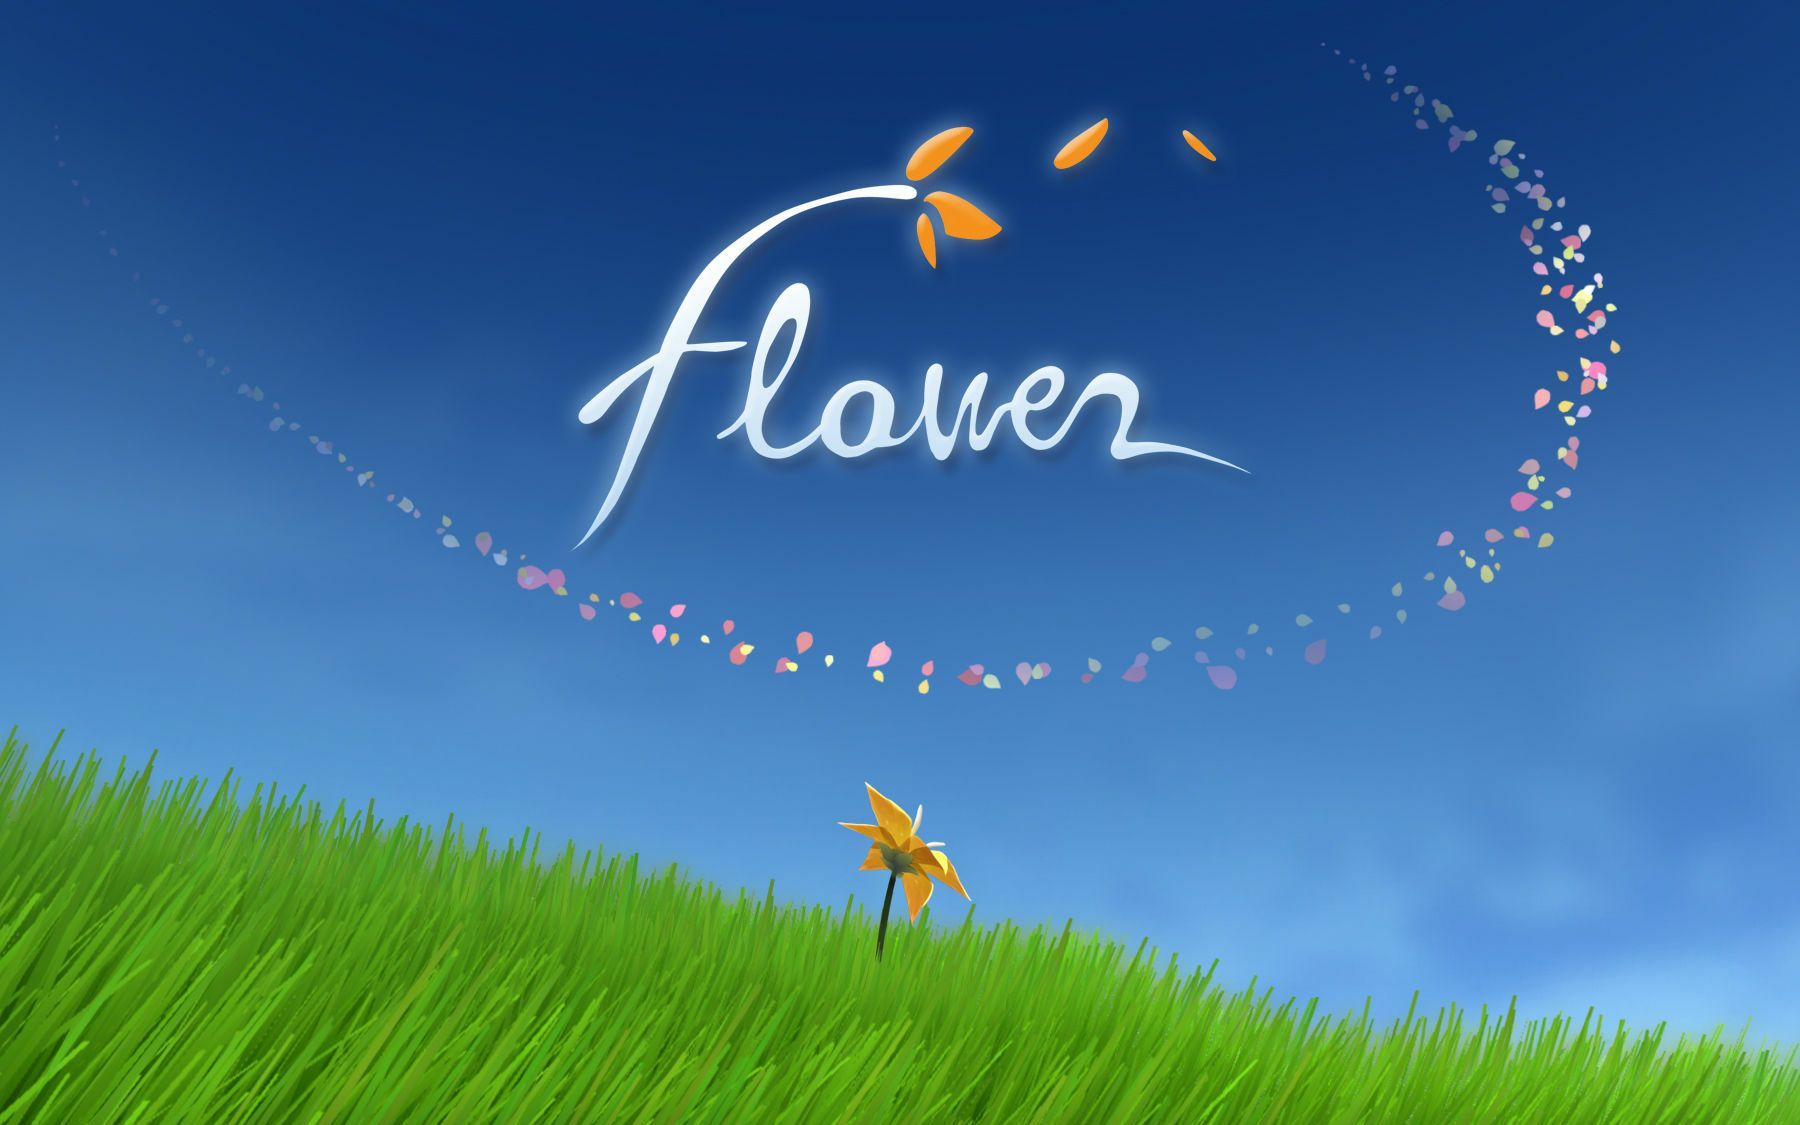 【游戏实况】Flower（花）全流程 无解说 风之旅人陈星汉作品